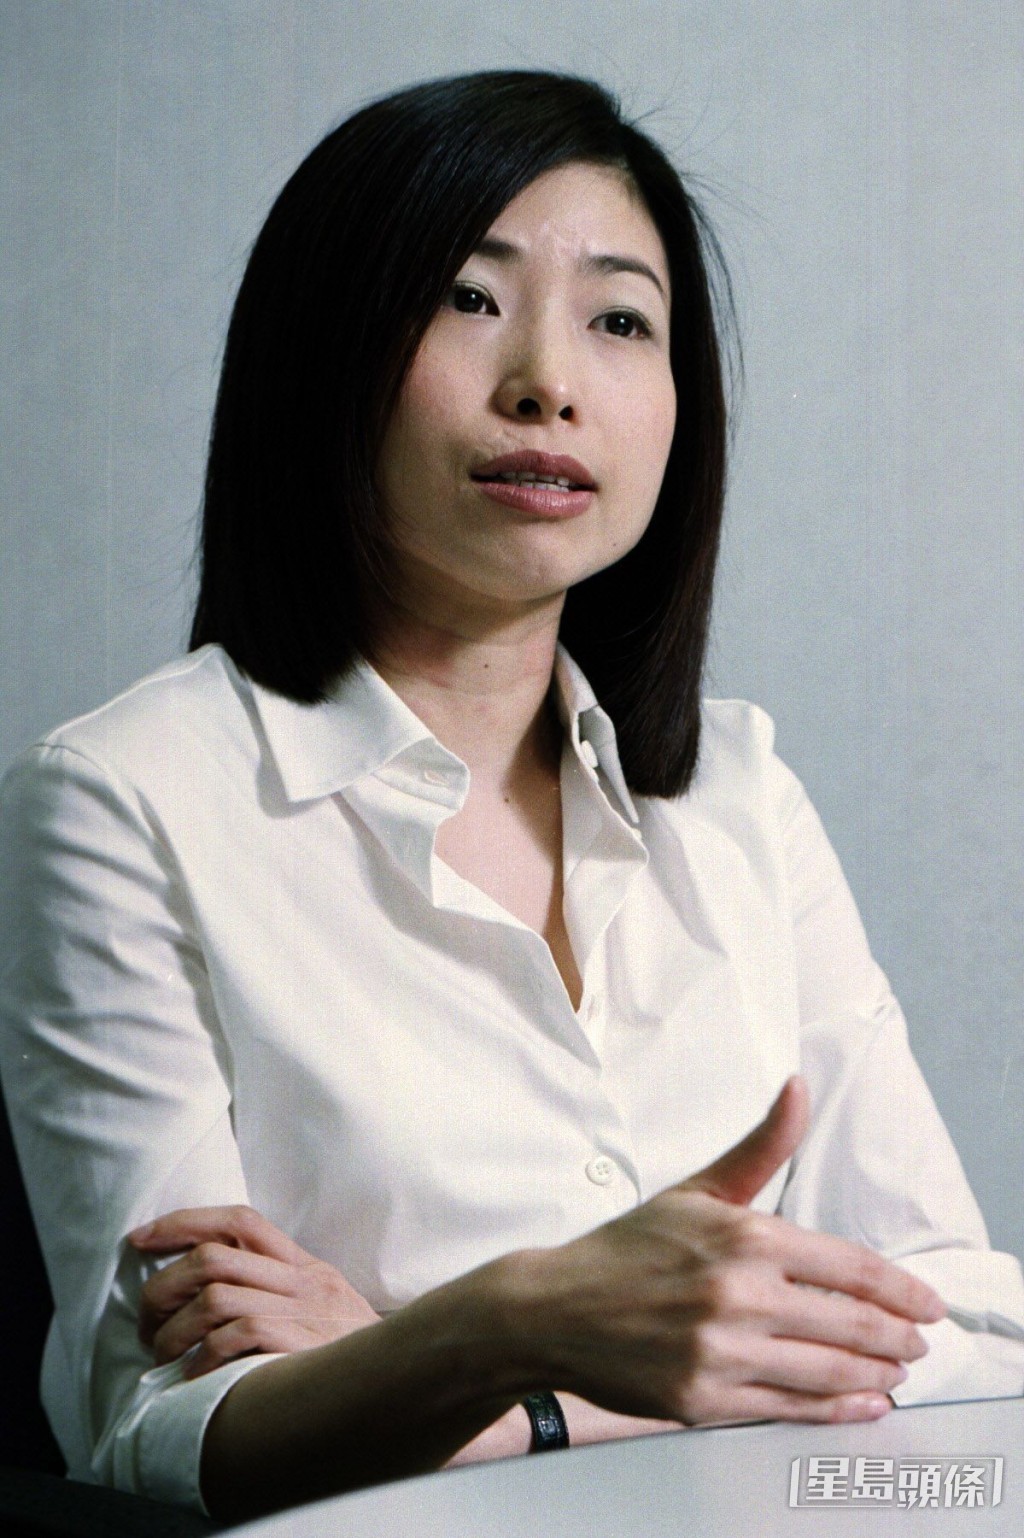 張小嫻是繼亦舒後香港最受歡迎的言情小說家。